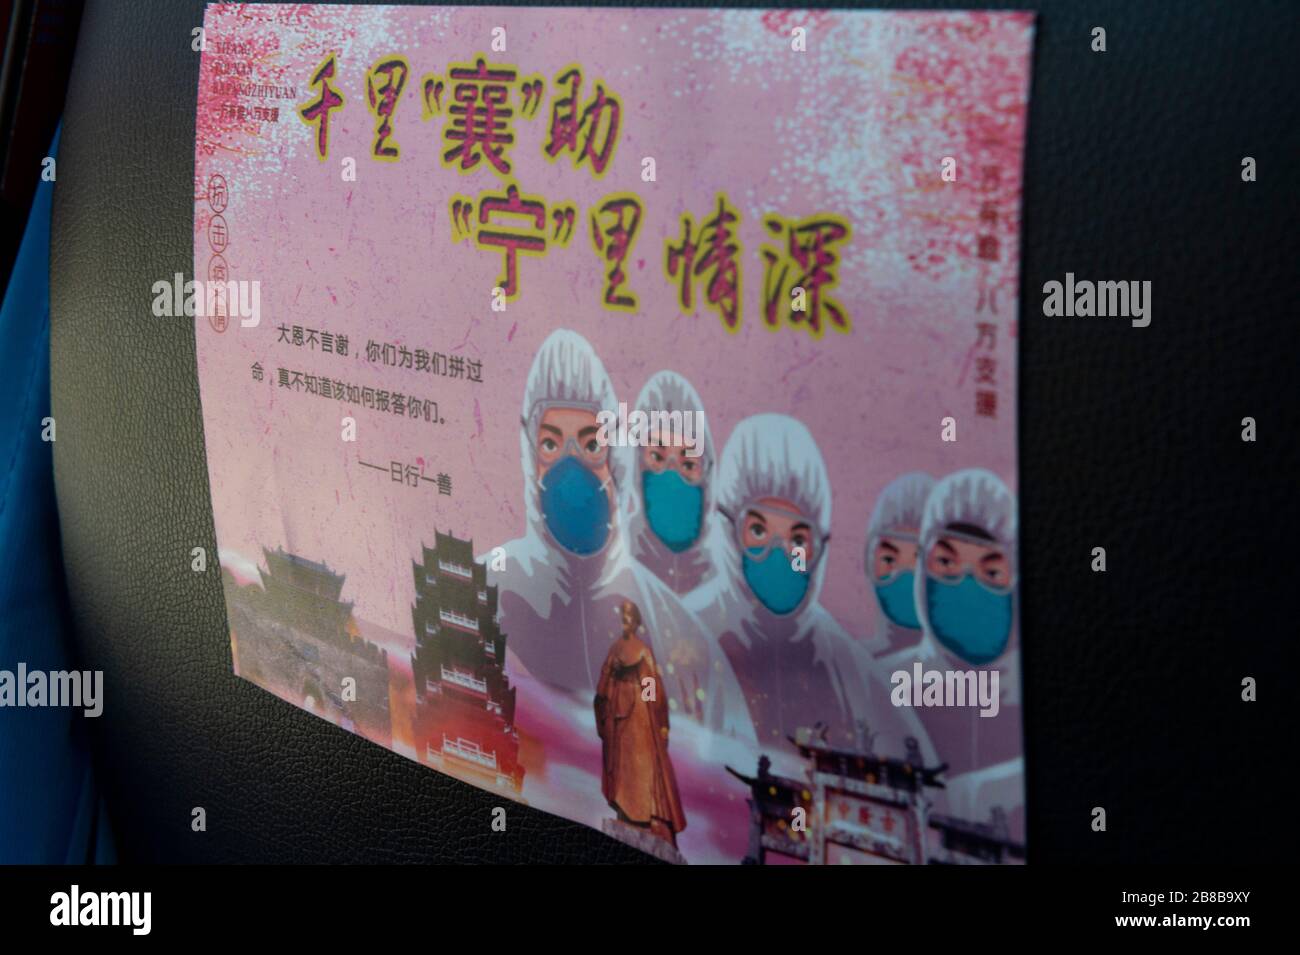 Xiangyang, la province chinoise de Hubei. 20 mars 2020. Une affiche avec des mots reconnaissants aux travailleurs médicaux est visible à l'arrière d'une chaise d'autobus dans la ville de Xiangyang, dans la province de Hubei en Chine centrale, le 20 mars 2020. Vendredi, 216 travailleurs médicaux de la région autonome de Ningxia hui, dans le nord-ouest de la Chine, ont quitté Xiangyang après avoir terminé leur tâche. Crédit: XIE Jianfei/Xinhua/Alay Live News Banque D'Images